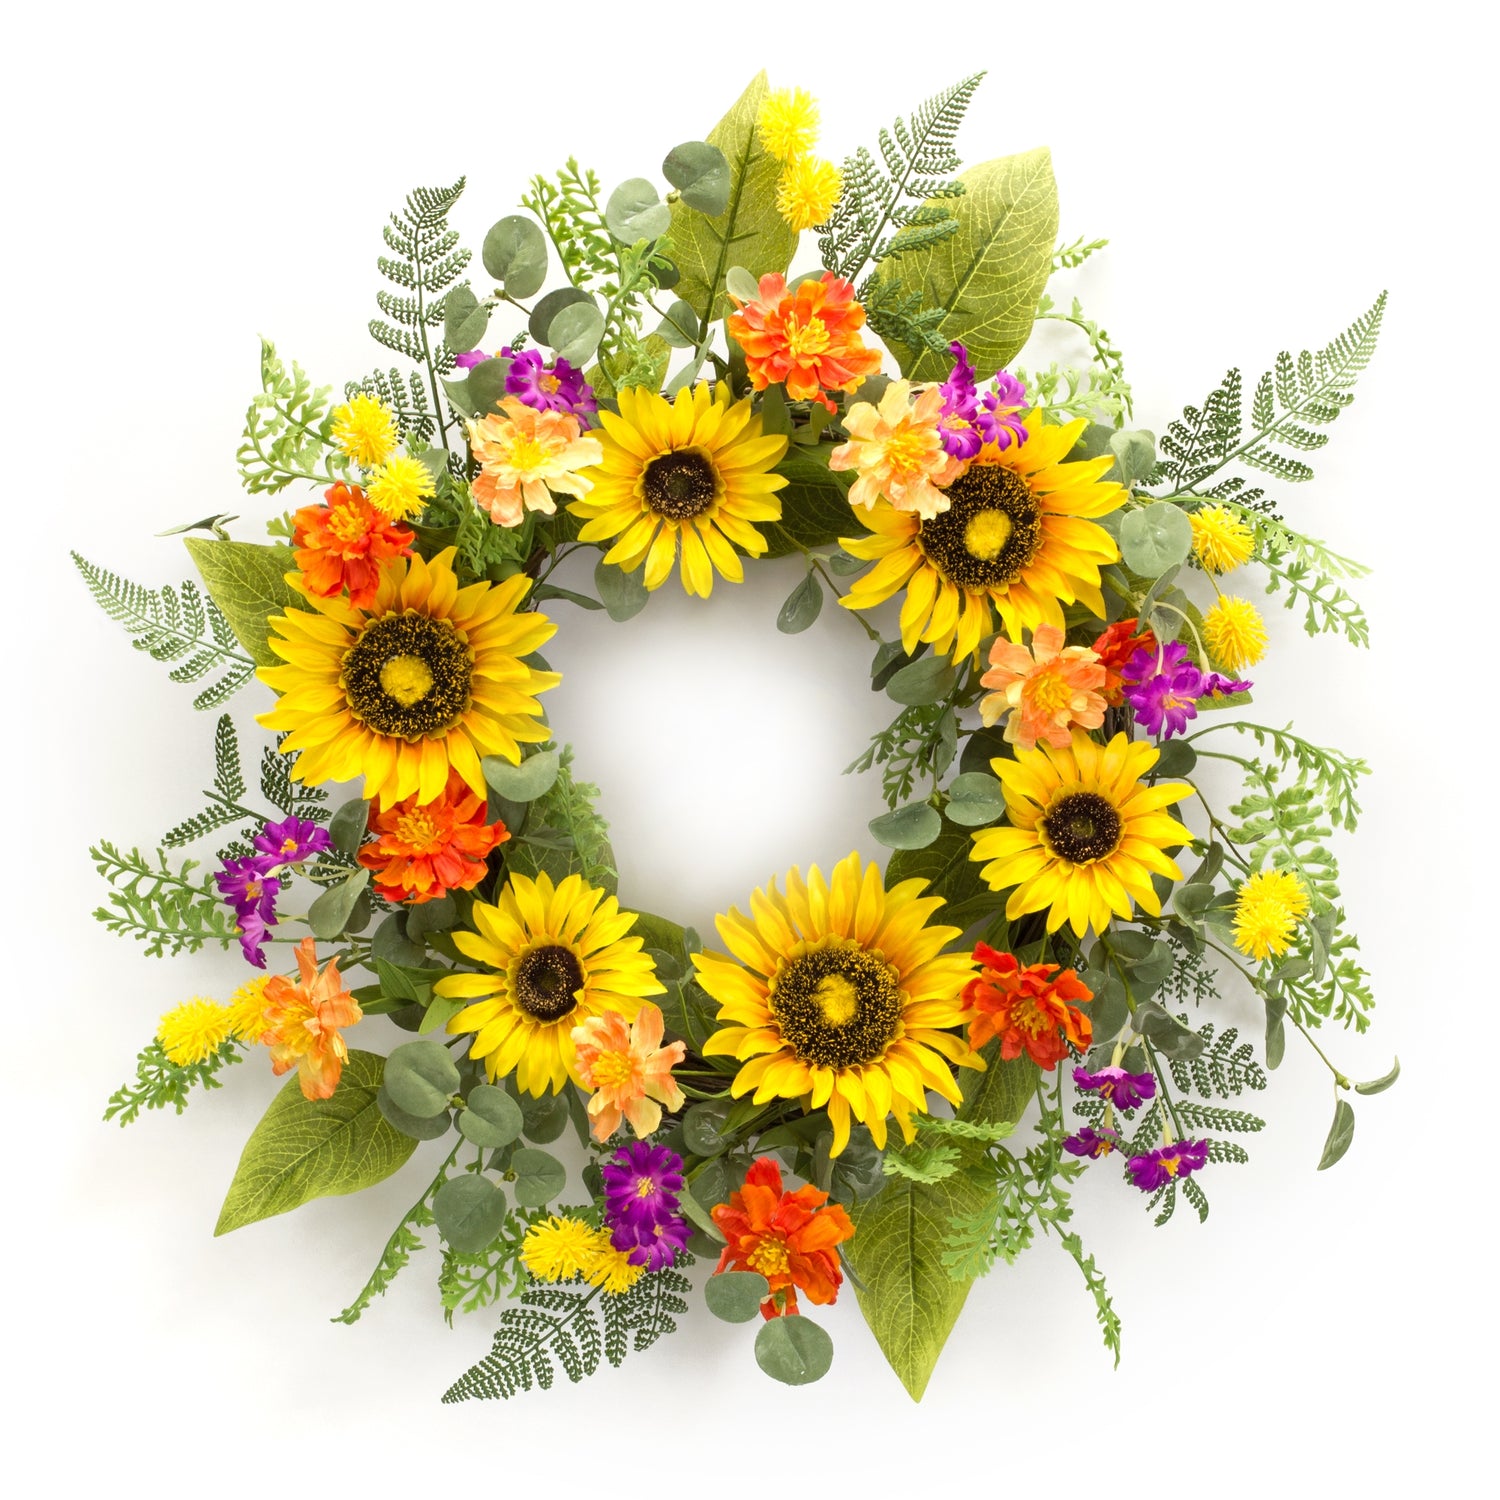 Mixed Sunflower Wreath 22"D Polyester